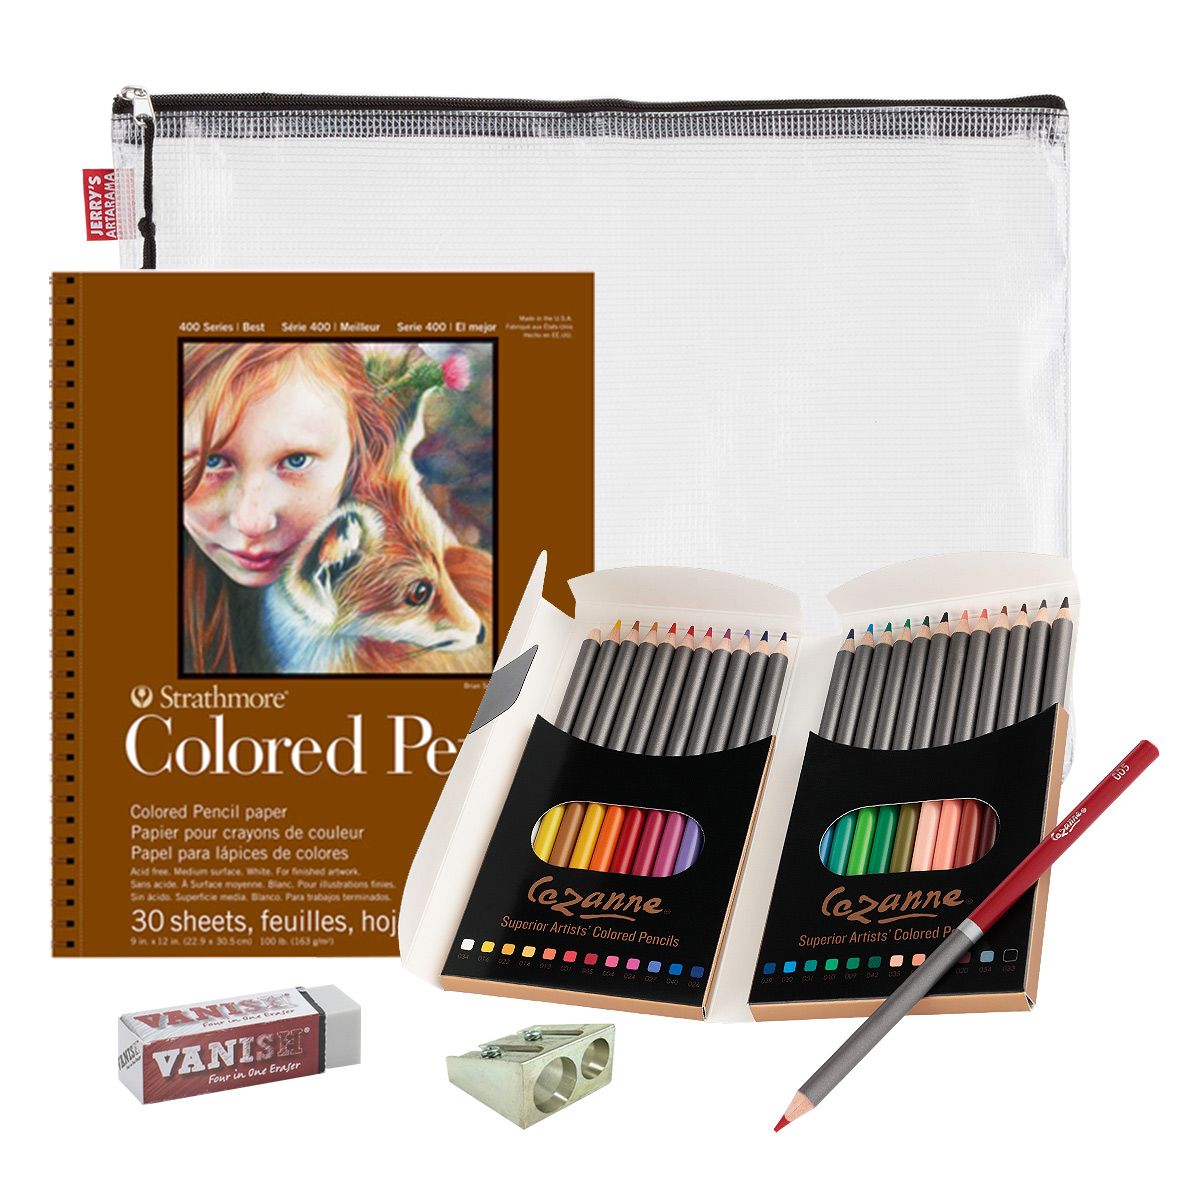 Strathmore Colored Pencil Pad + Mesh Bag Set